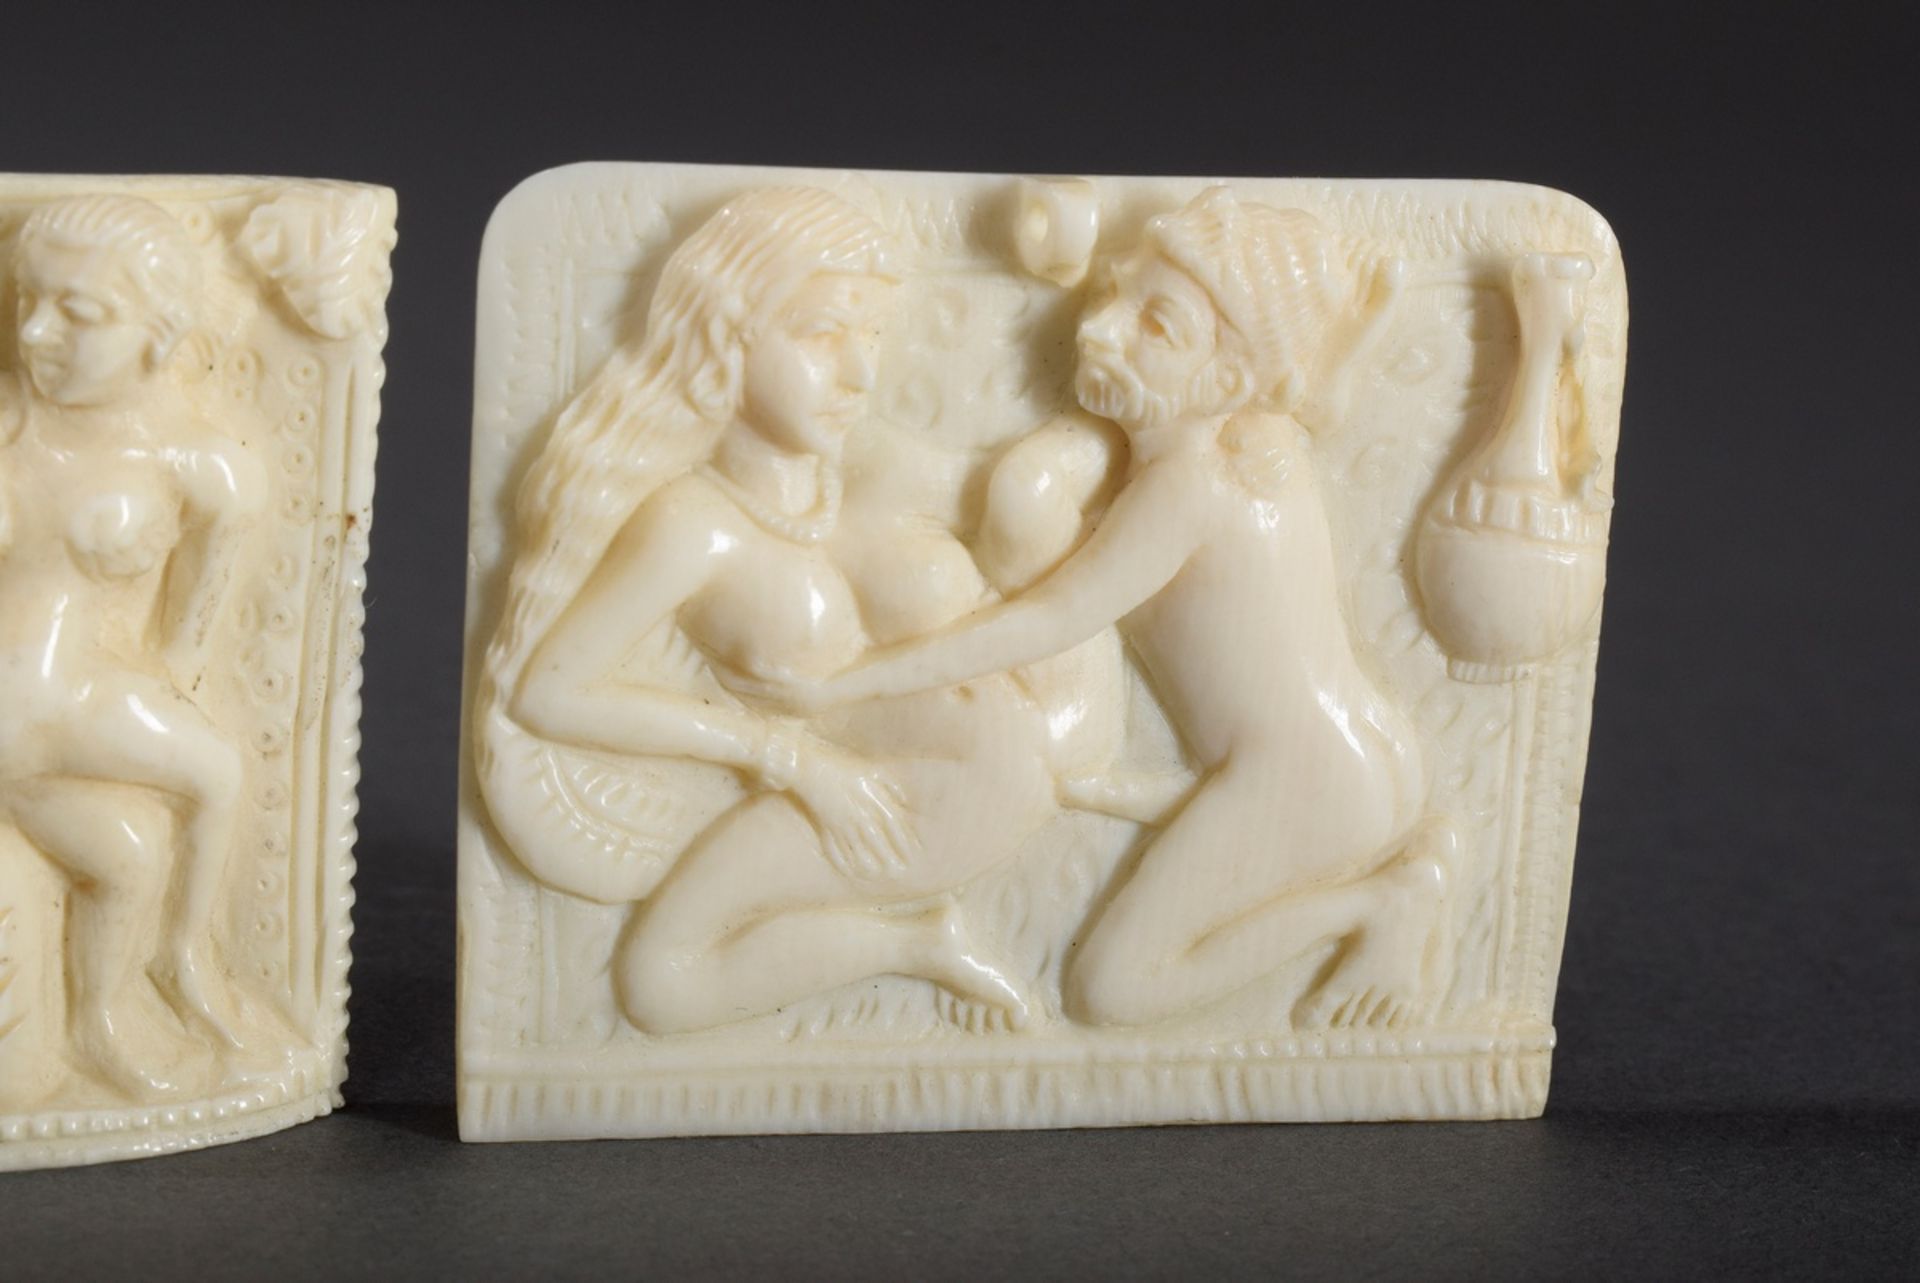 4 Fein geschnitzte Elfenbein Reliefs "Kamasutra Positione | 4 ivory reliefs "Erotic scenes", India - Bild 4 aus 5